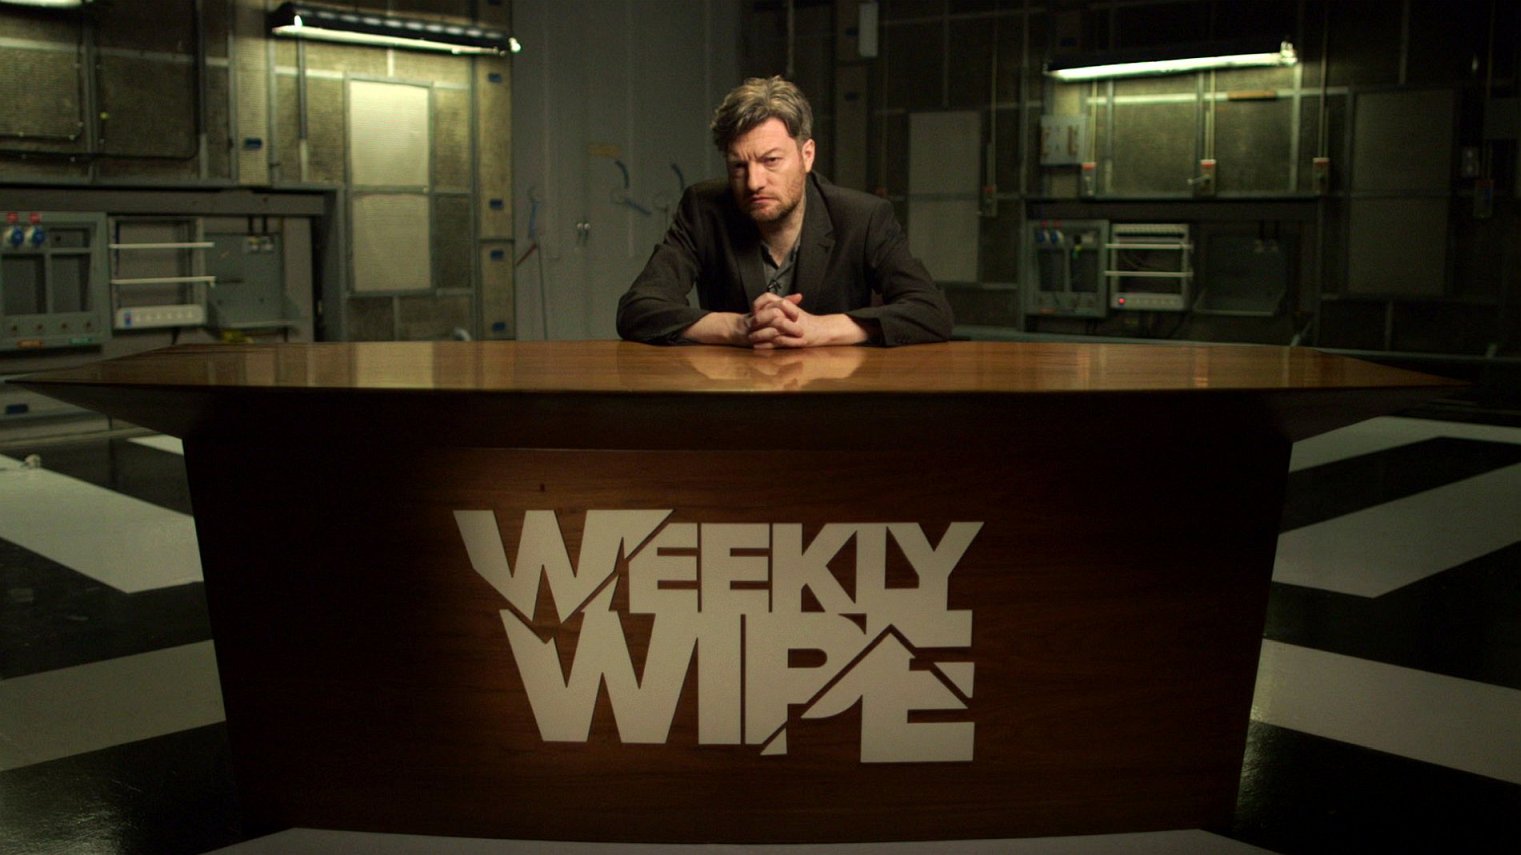 cast of Charlie Brooker's Weekly Wipe season 1